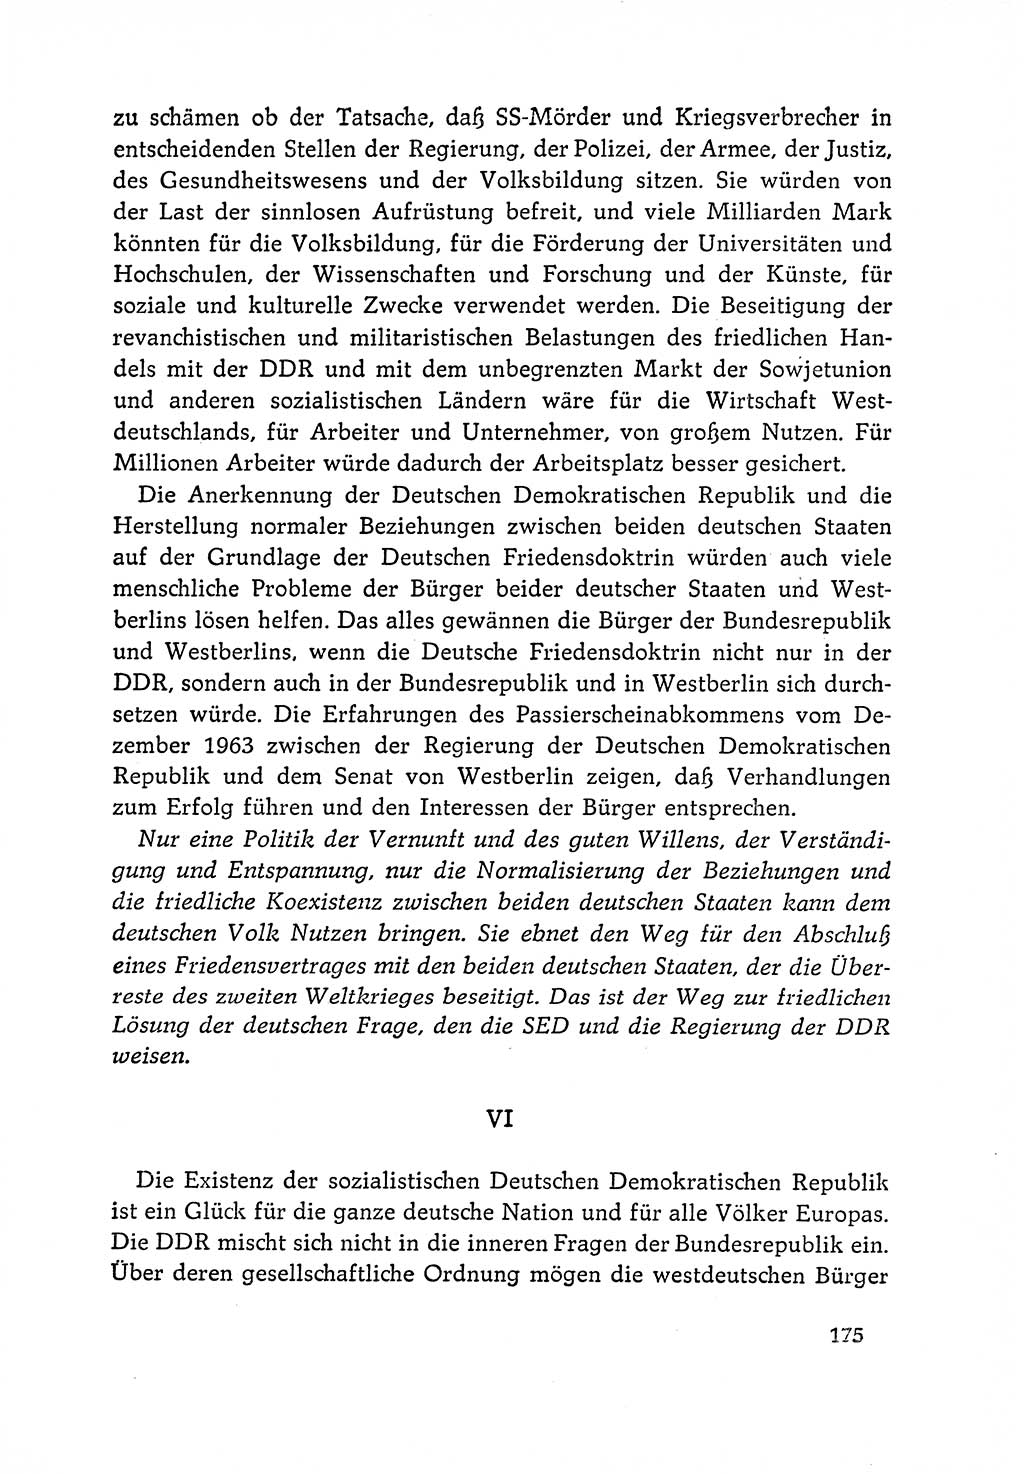 Dokumente der Sozialistischen Einheitspartei Deutschlands (SED) [Deutsche Demokratische Republik (DDR)] 1964-1965, Seite 175 (Dok. SED DDR 1964-1965, S. 175)